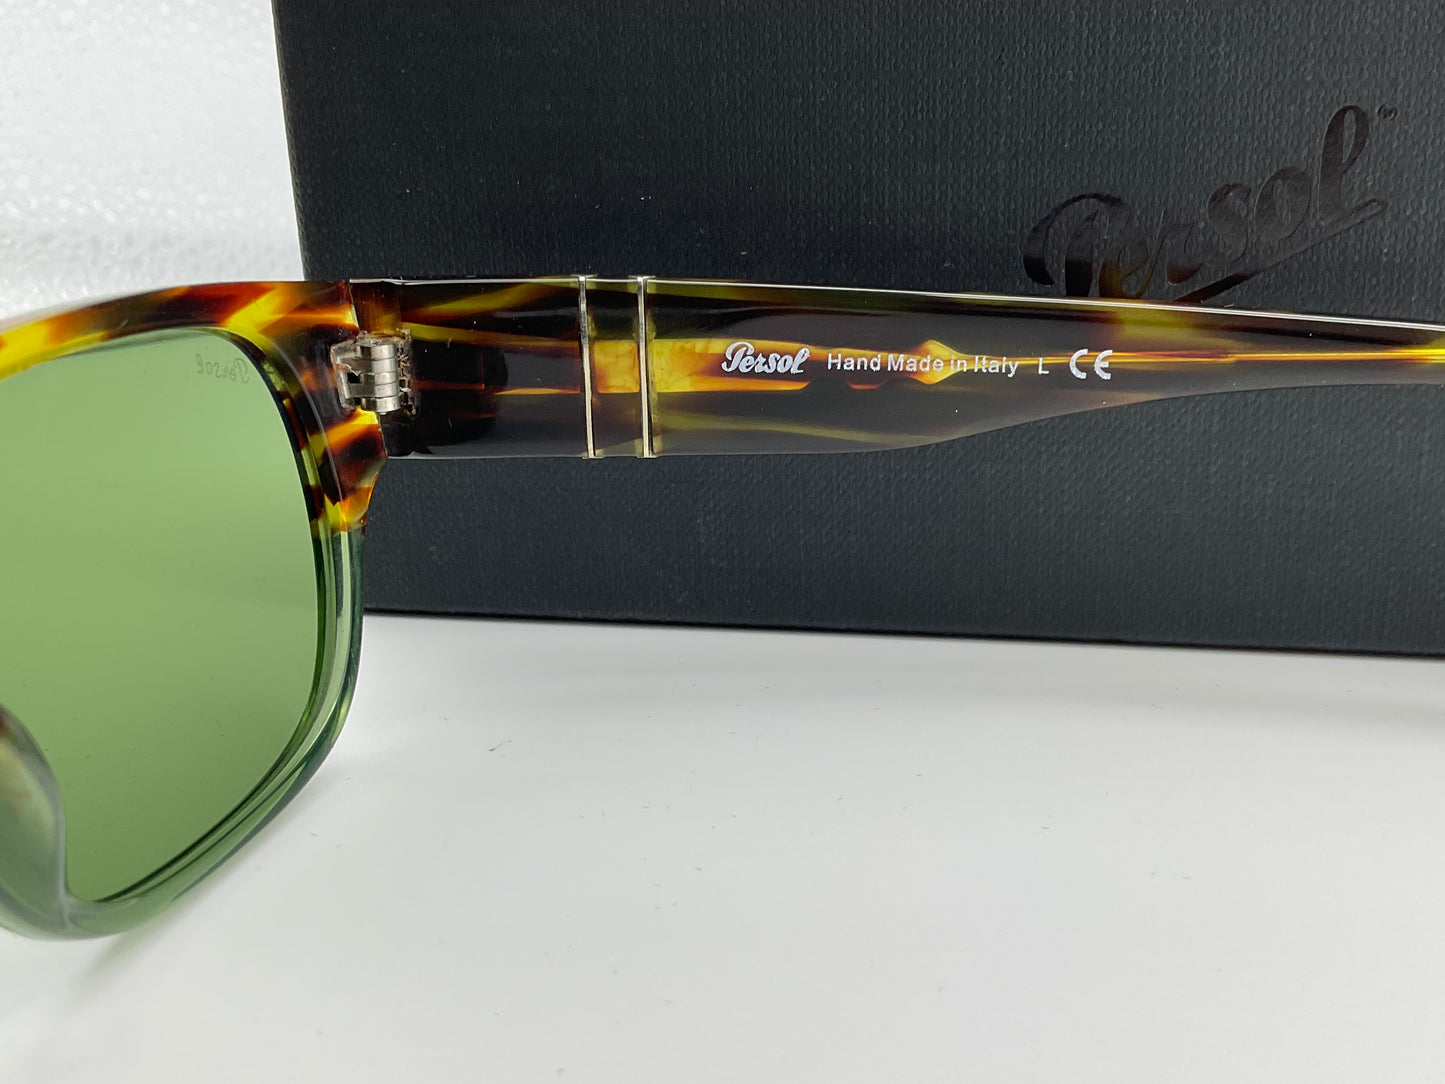 Persol PO 3245s 52Mm Sunglasses Men's Green